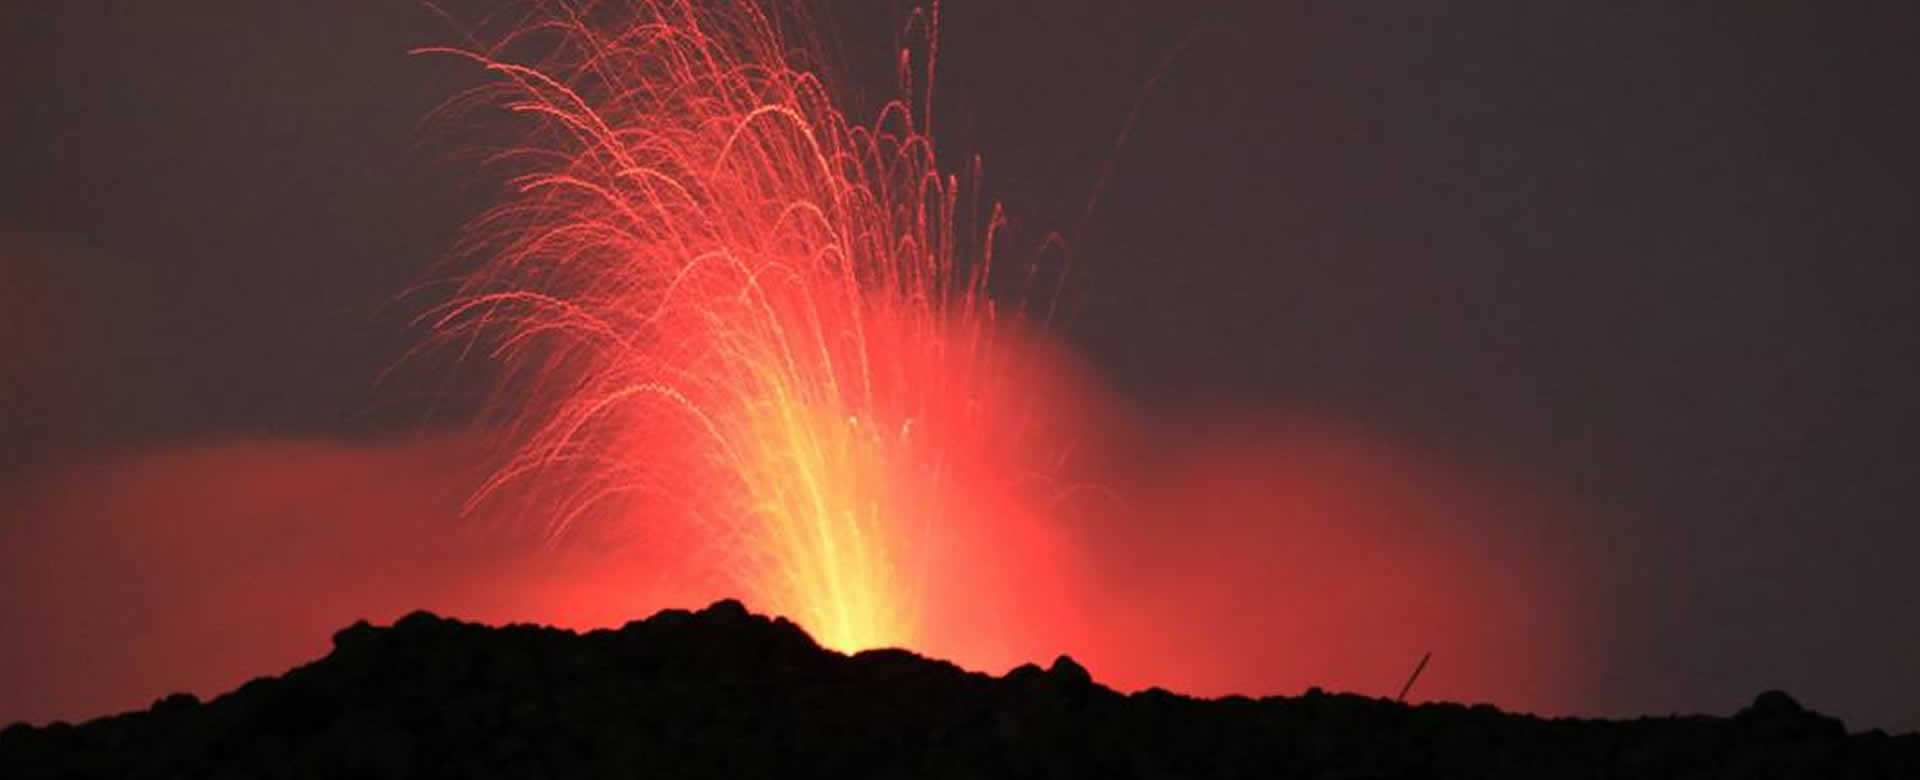 Volcán Etna expulsa tres flujos de lava envolviendo a Catania en cenizas